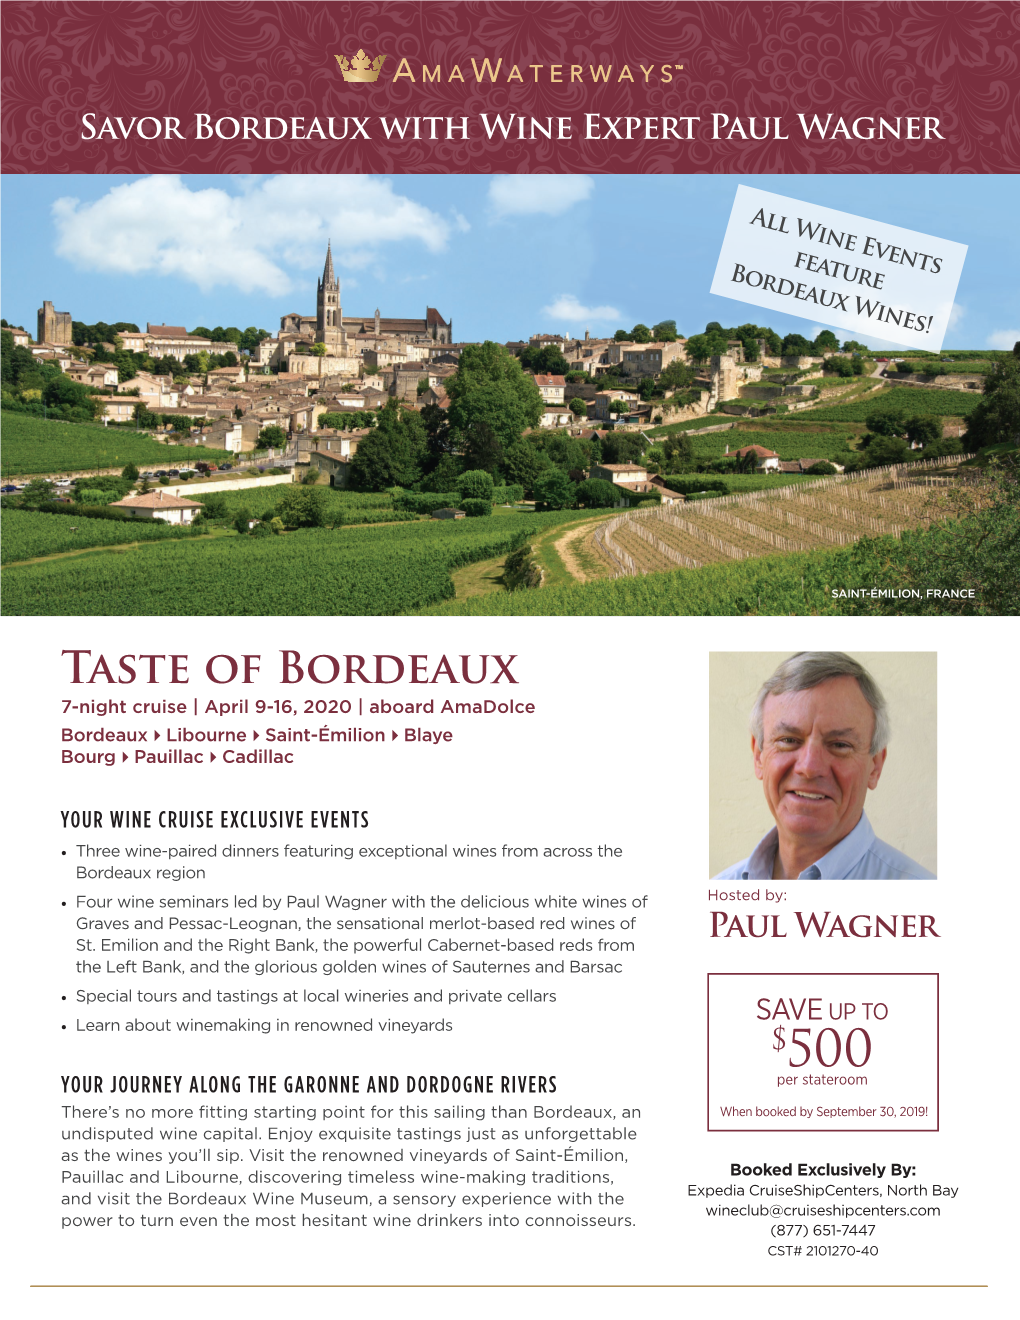 Taste of Bordeaux 7-Night Cruise | April 9-16, 2020 | Aboard Amadolce Bordeaux4libourne4saint-Émilion4blaye Bourg4pauillac4cadillac